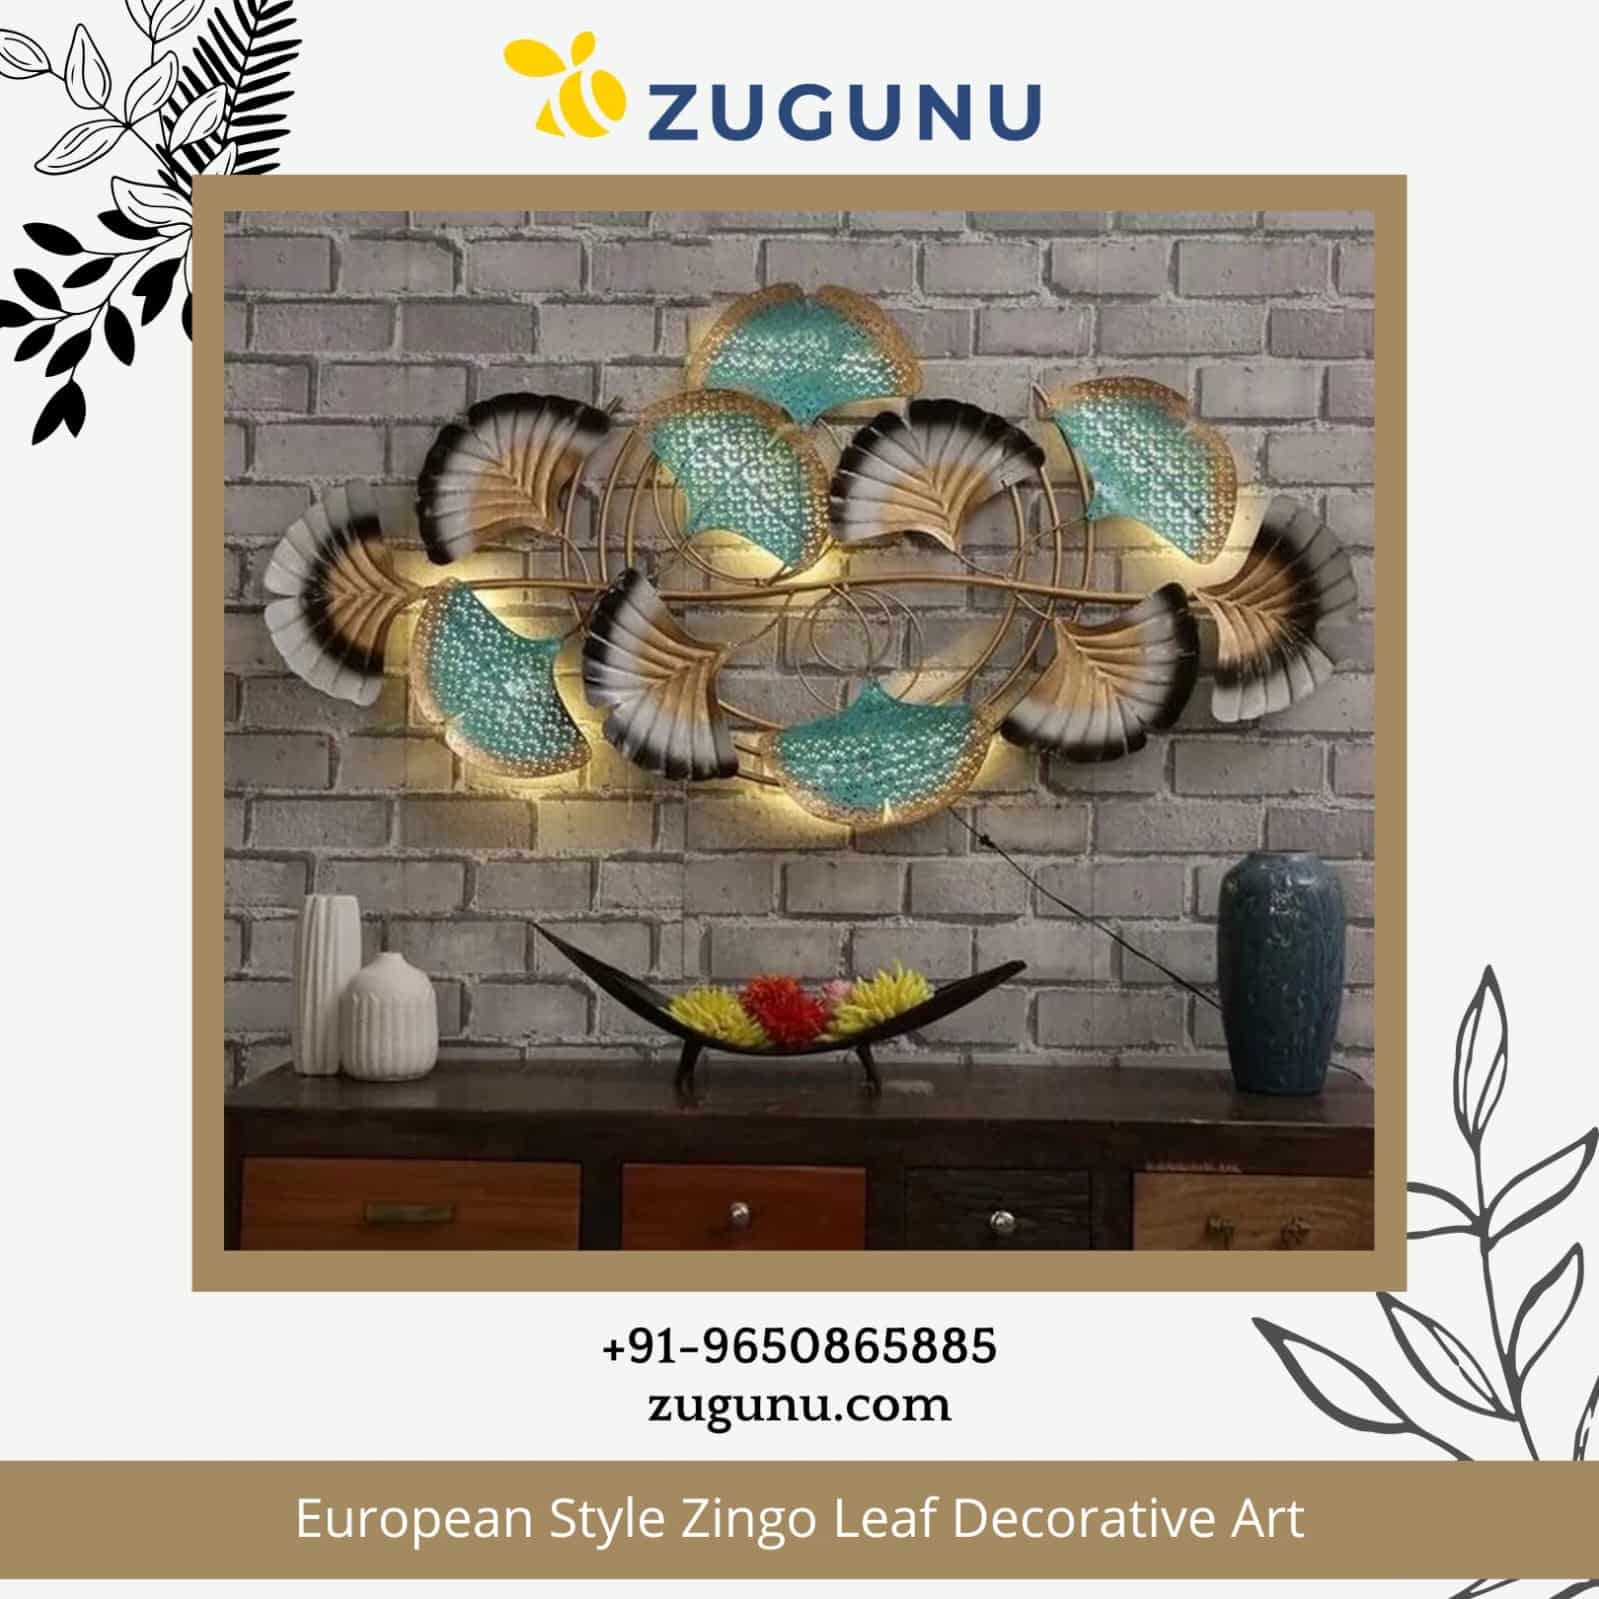 European Style Zingo Leaf Decorative Art From Zugunu